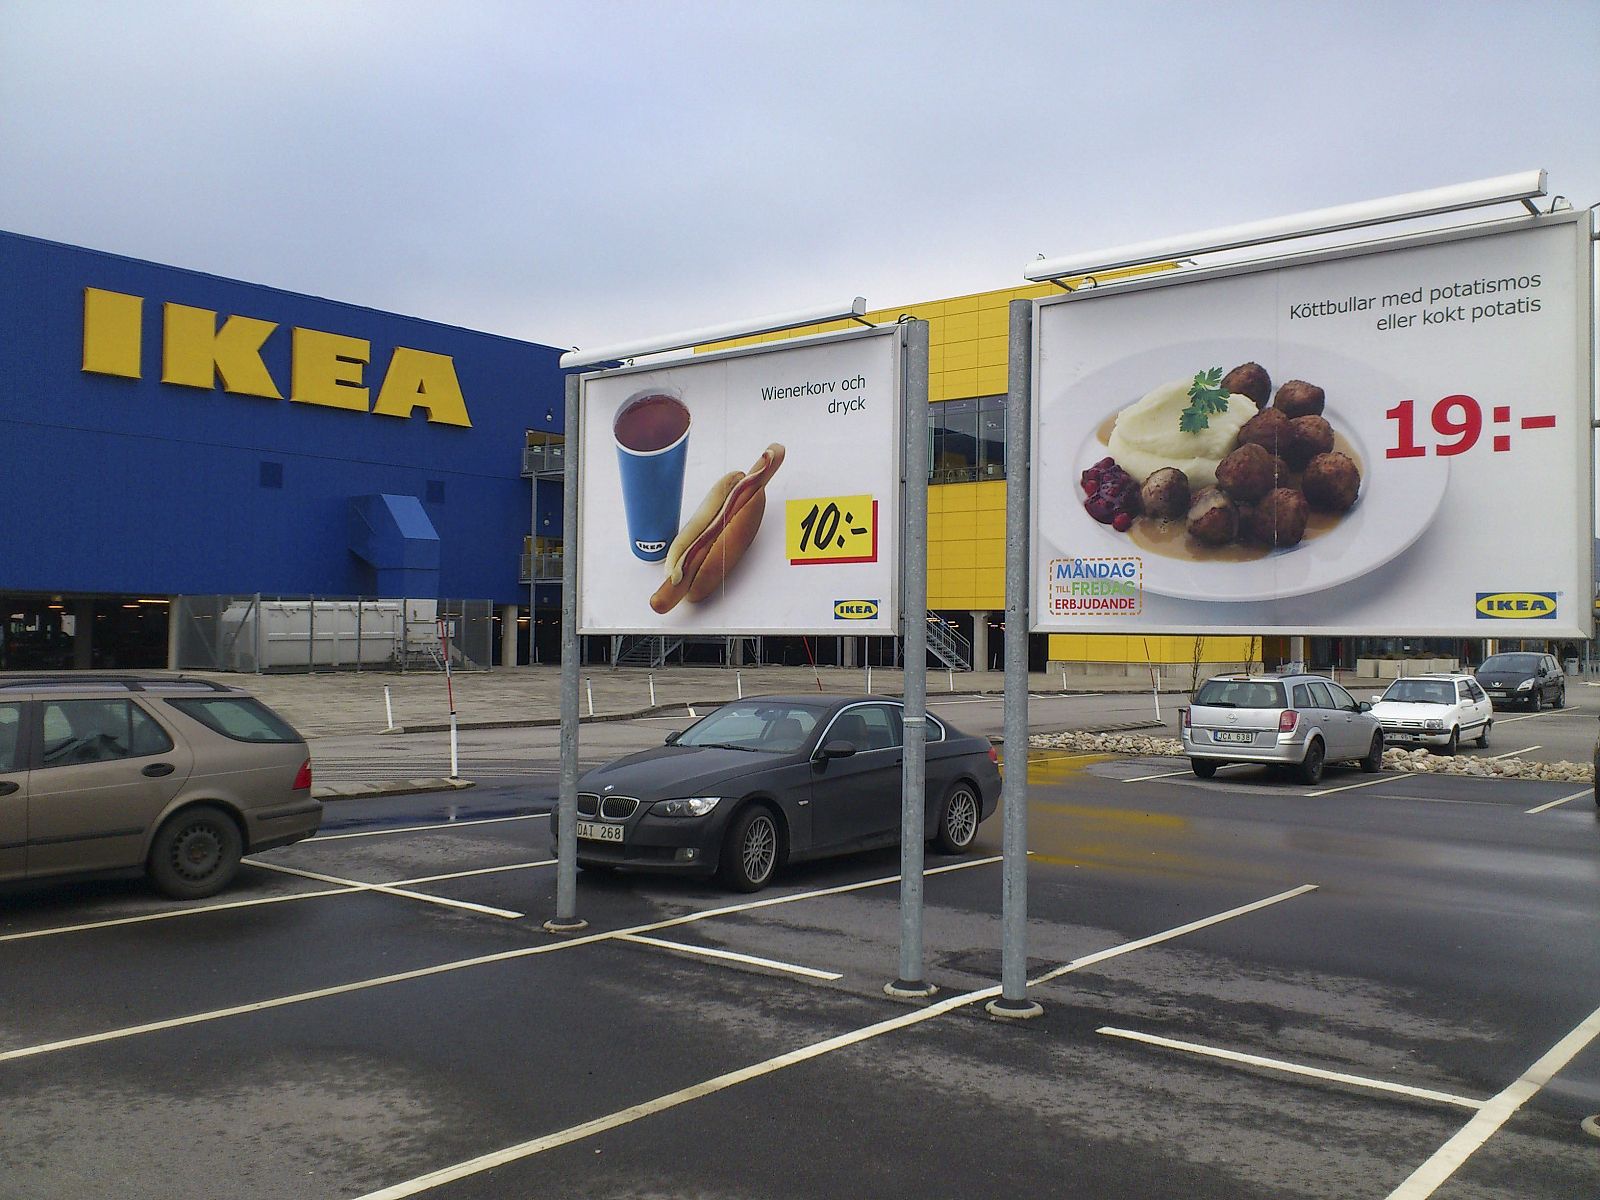 IKEA SUSPENDE VENTA DE ALBÓNDIGAS EN SUECIA POR SOSPECHAS DE RESTOS EQUINOS